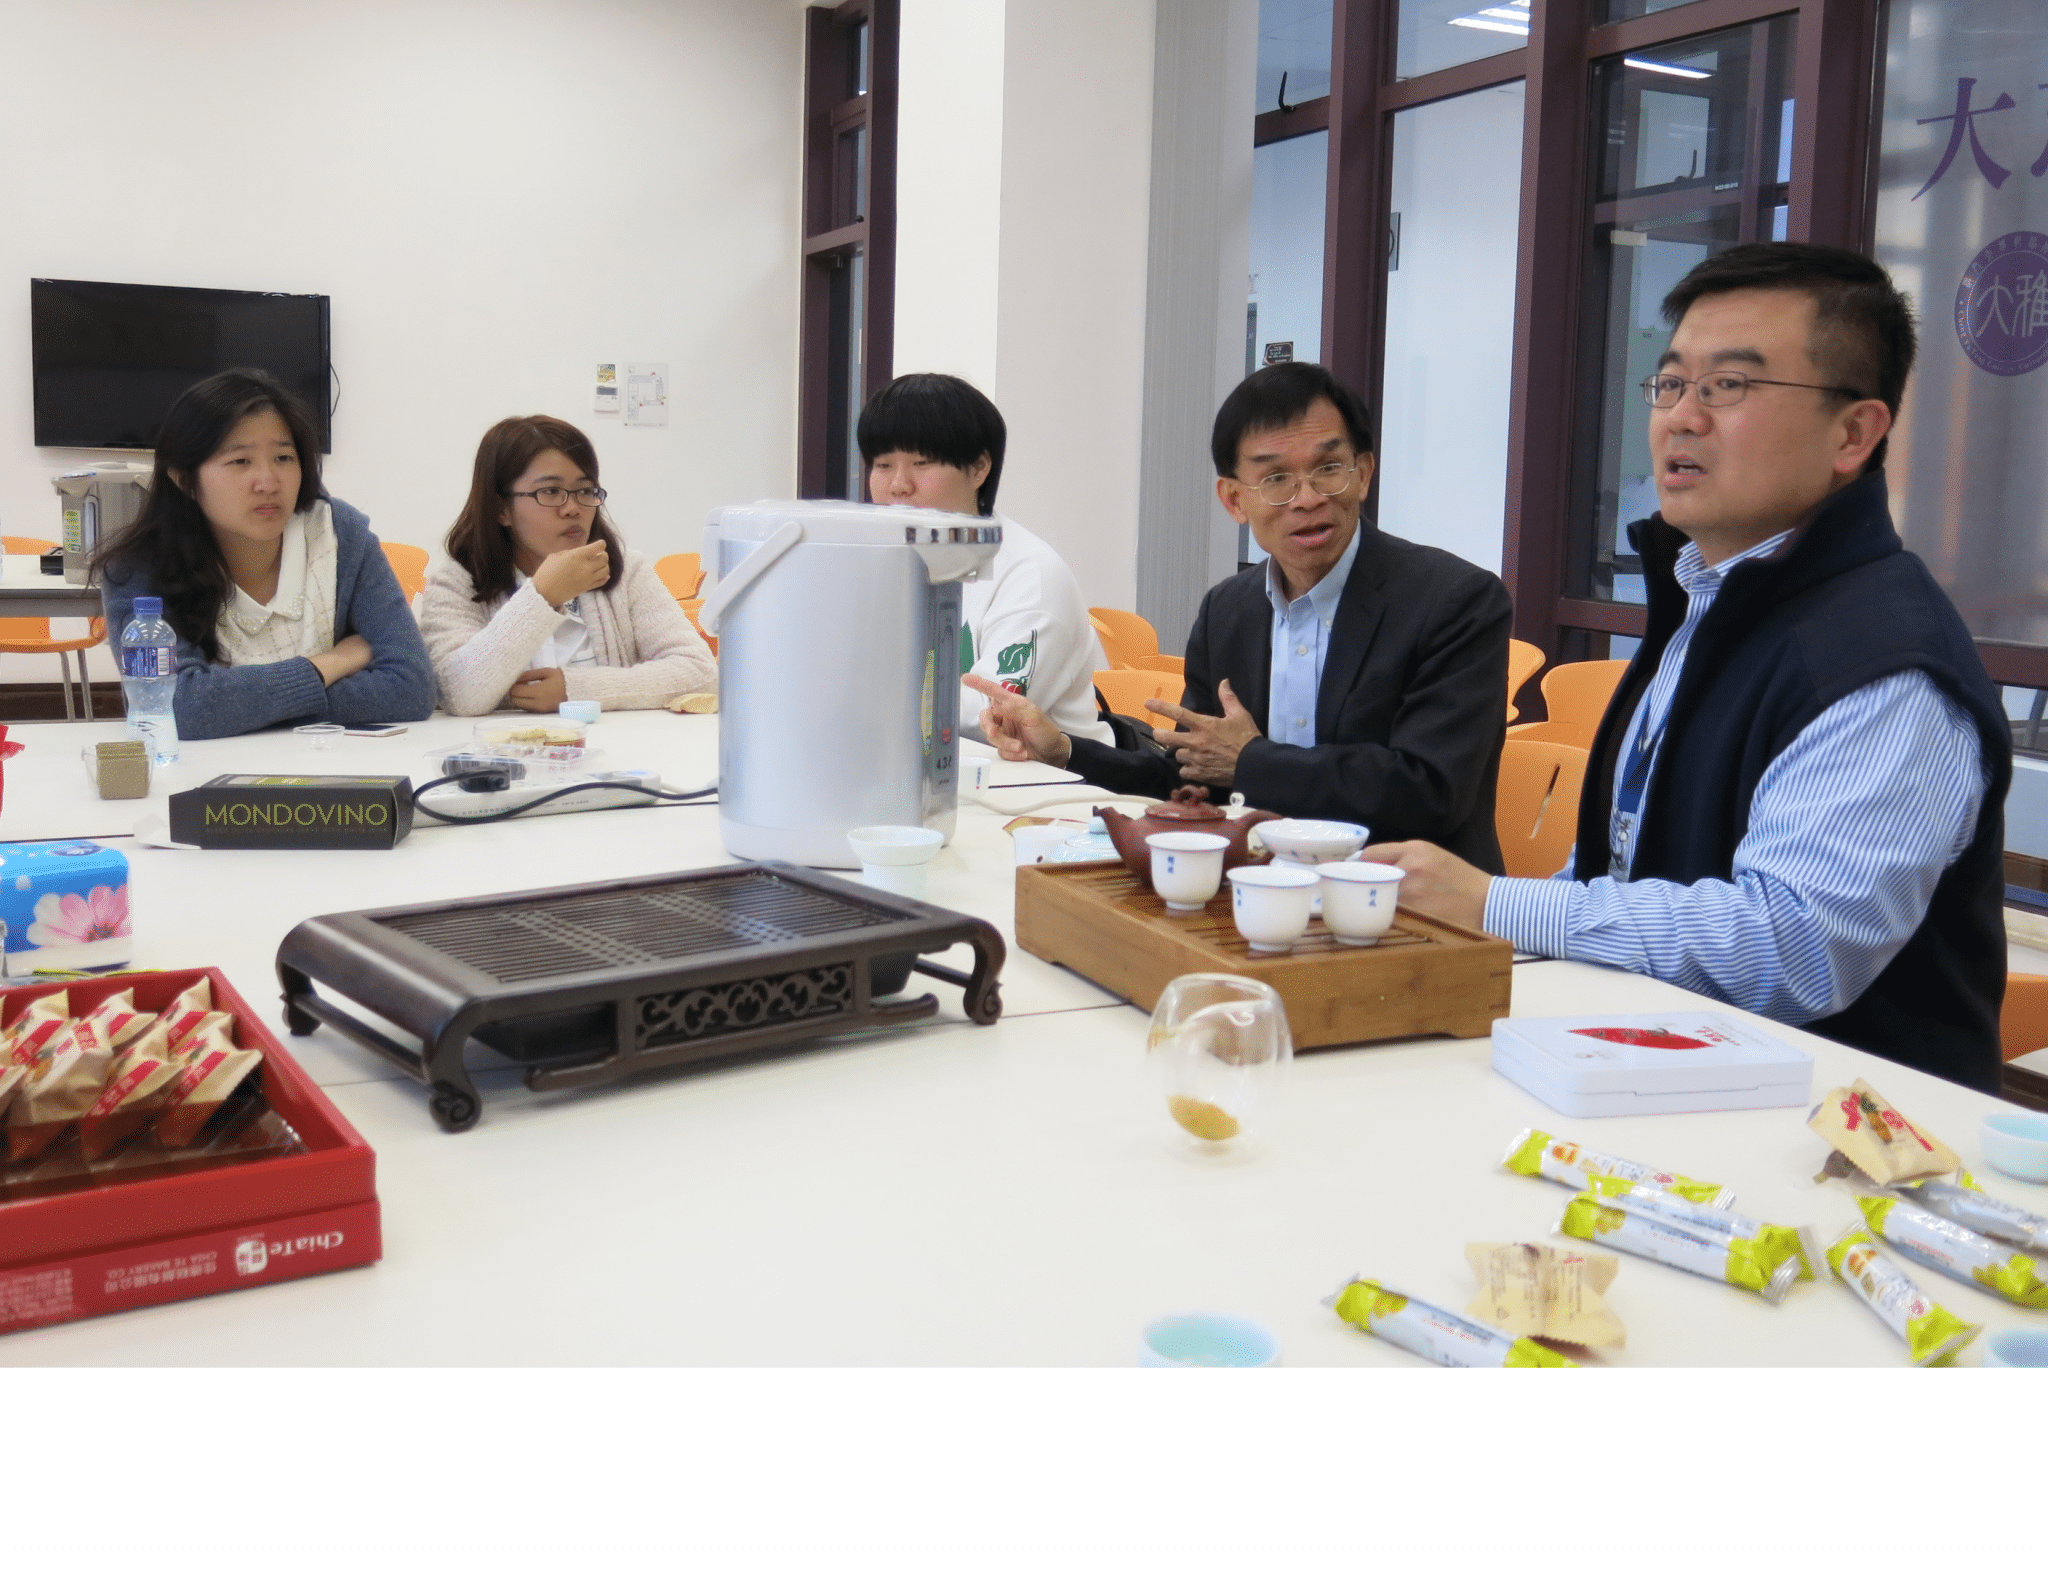 tea-tasting workshop hosted by Associate Master, Dr. Kevin Zhen